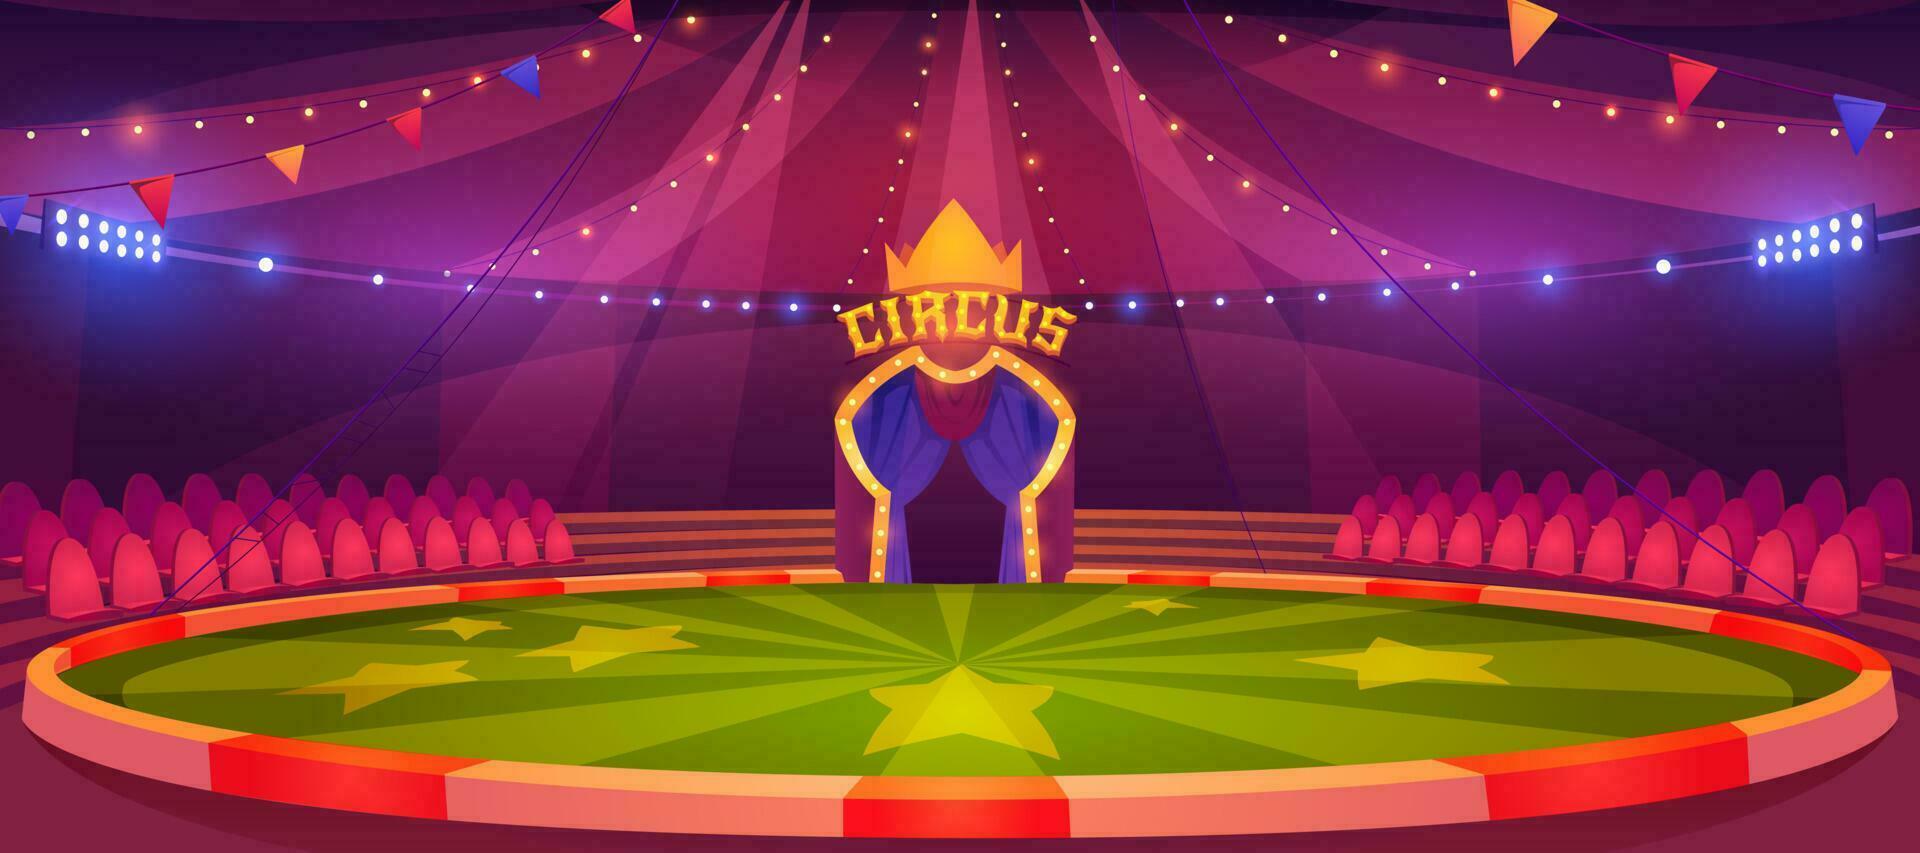 circo arena, volta etapa para desempenho vetor